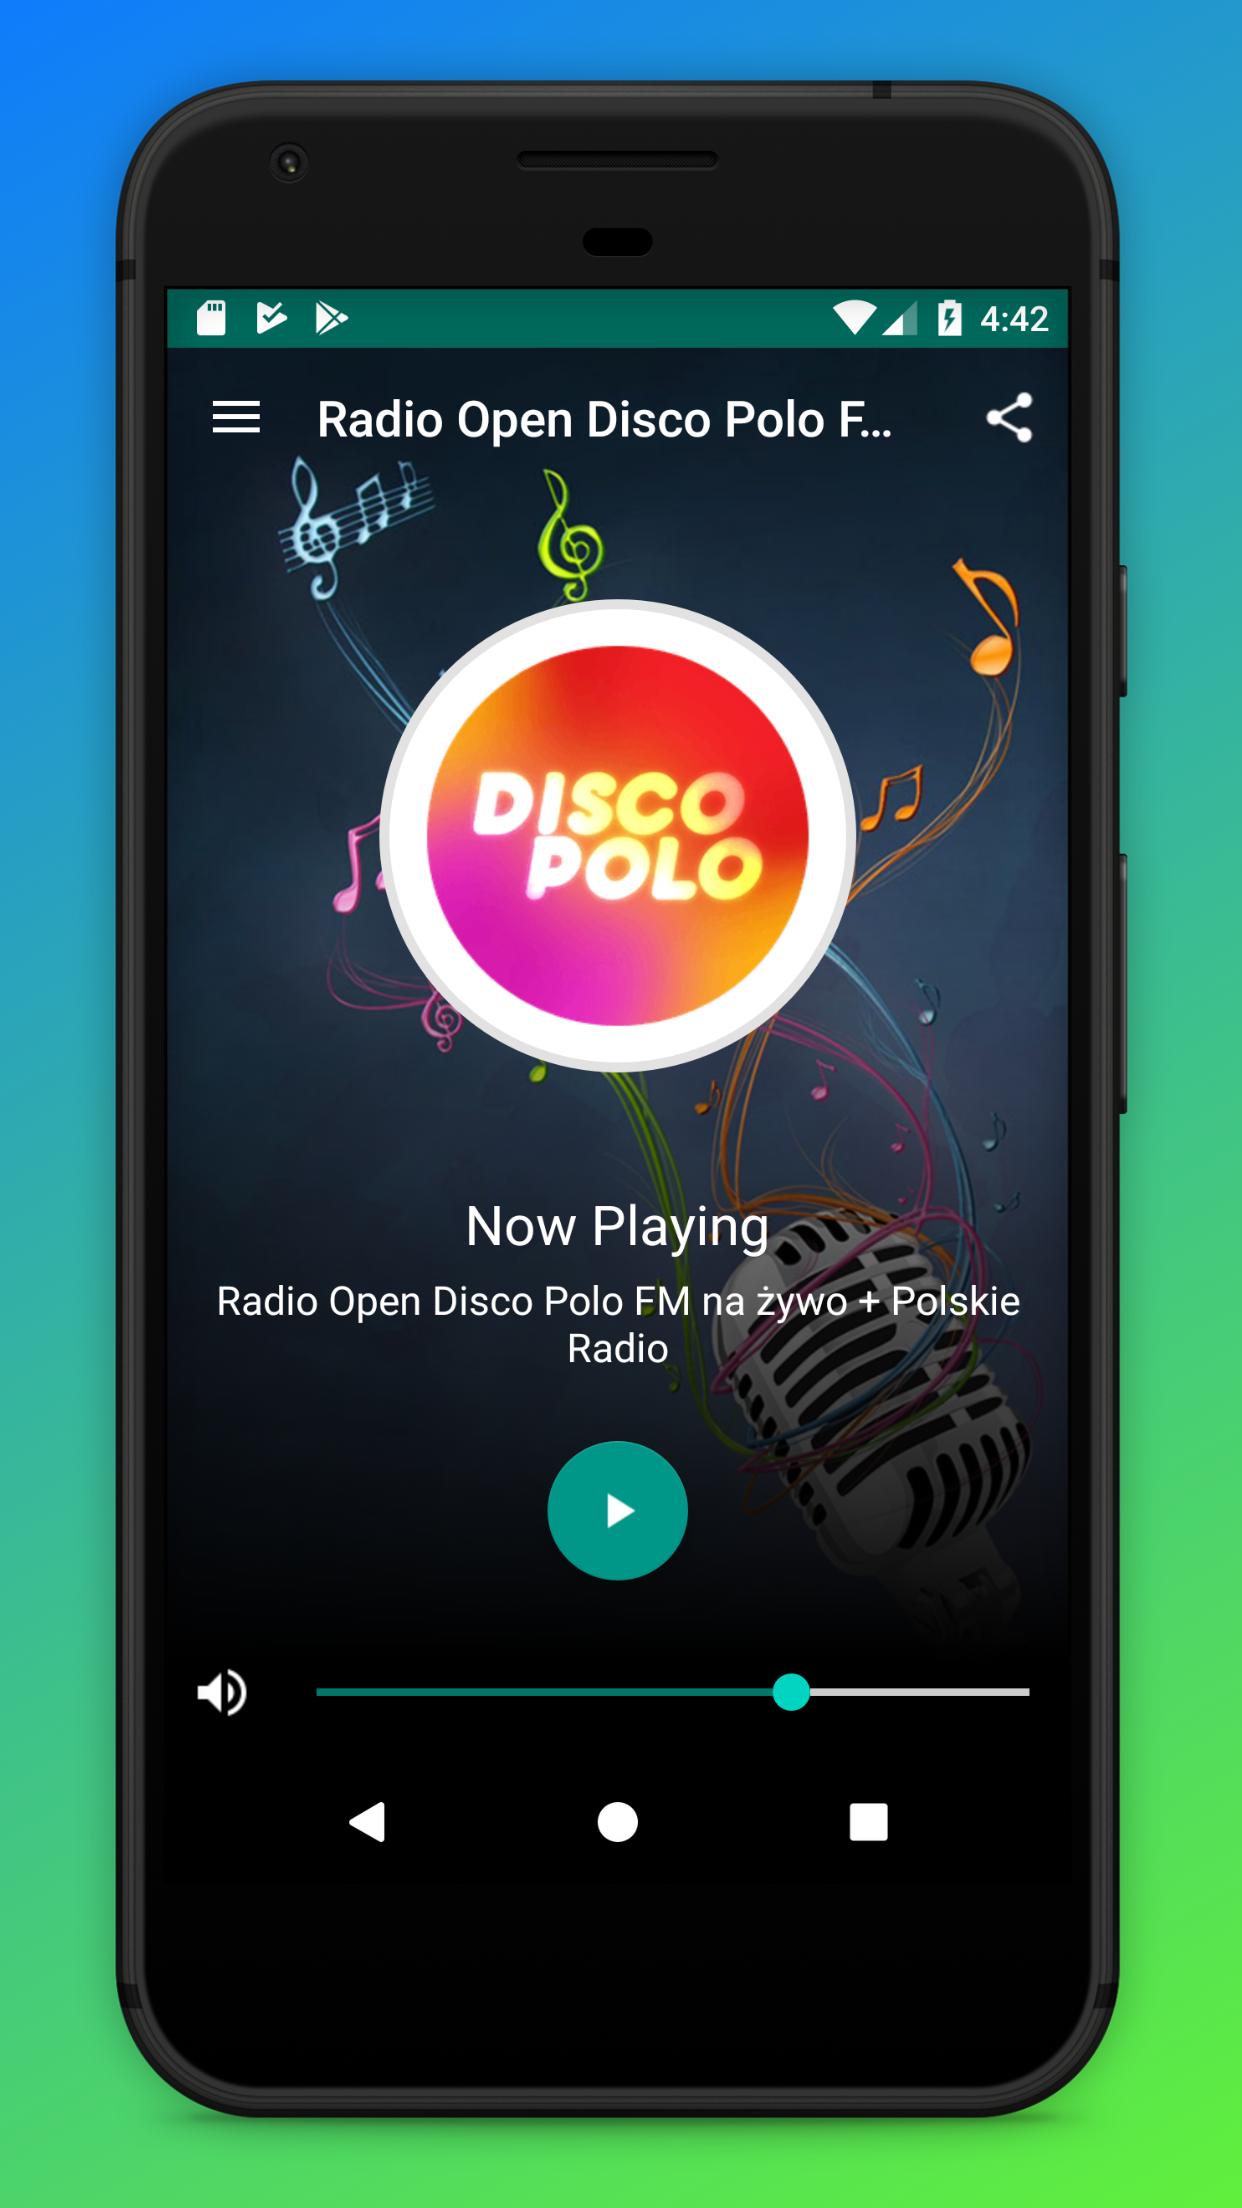 Radio Open Disco Polo FM na żywo + Polskie Radio for Android - APK Download